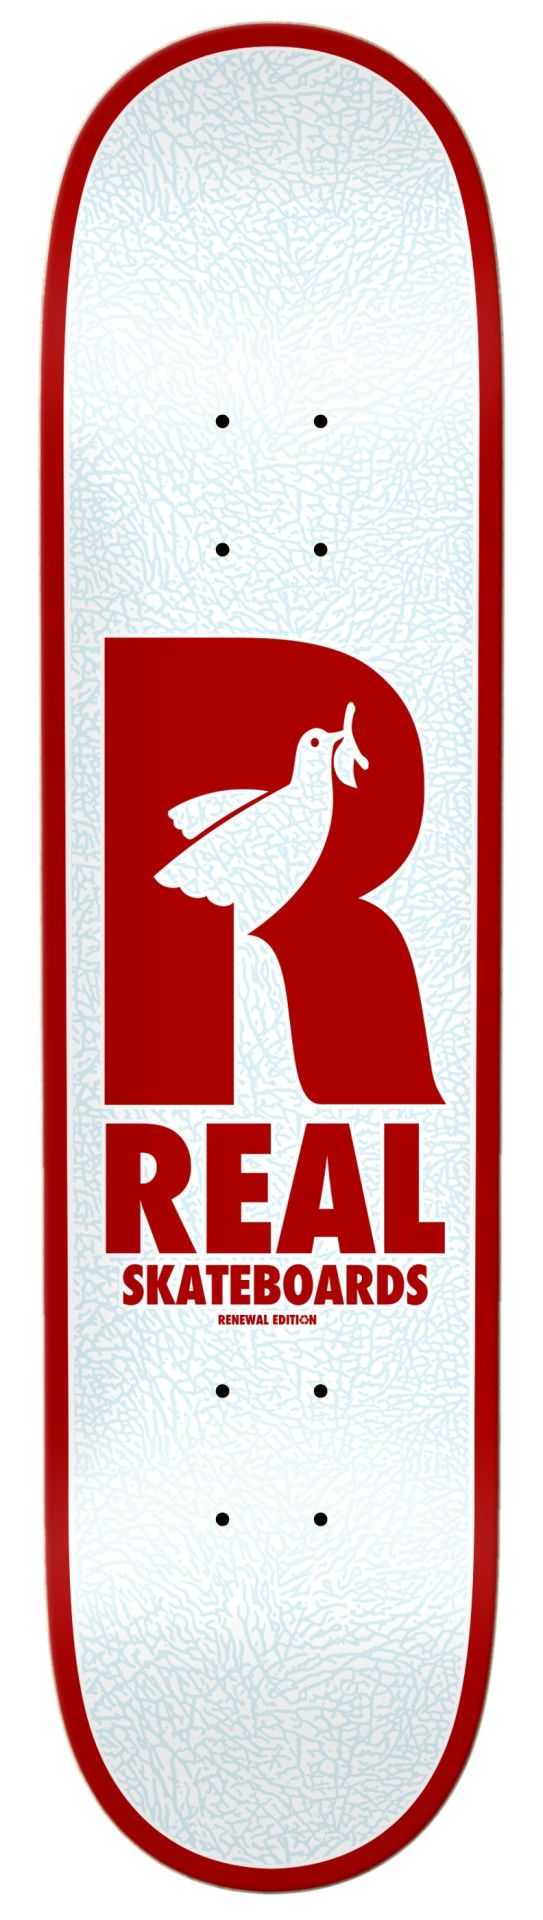 Real Doves Renewal PP 8.06 Kaykay Tahtası